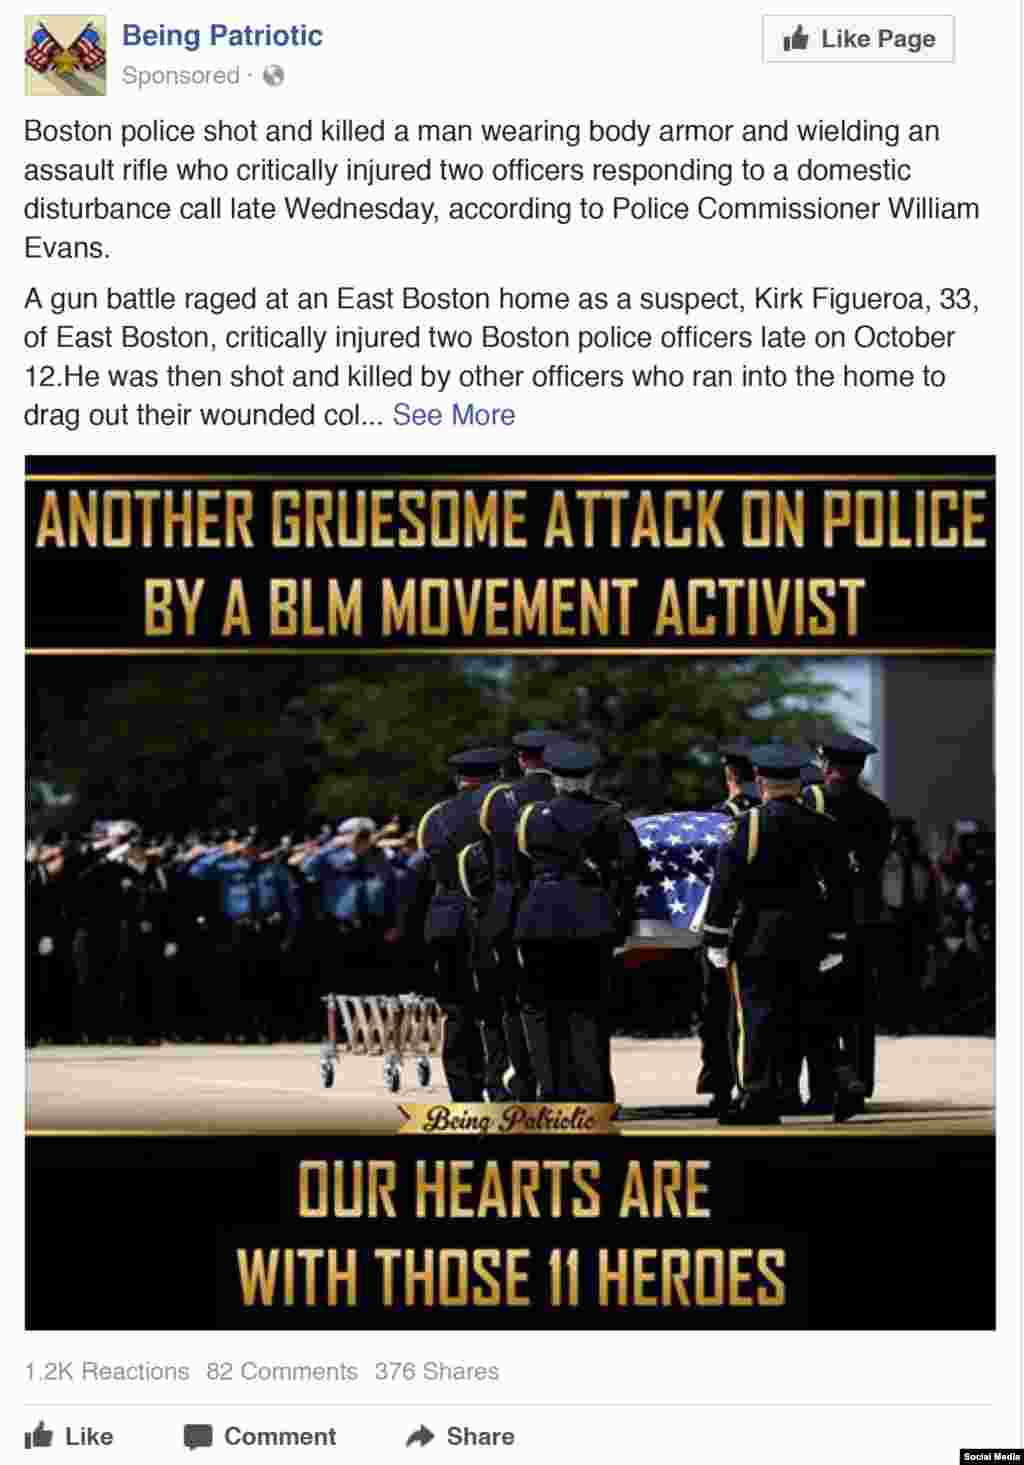 А эта реклама направлена на дискредитацию кампании Black Lives Matter против полицейского насилия. В ней утверждается, что активист BLM убил полицейского. &quot;Еще одно отвратительное нападение&quot;, &ndash; гласит реклама.&nbsp;